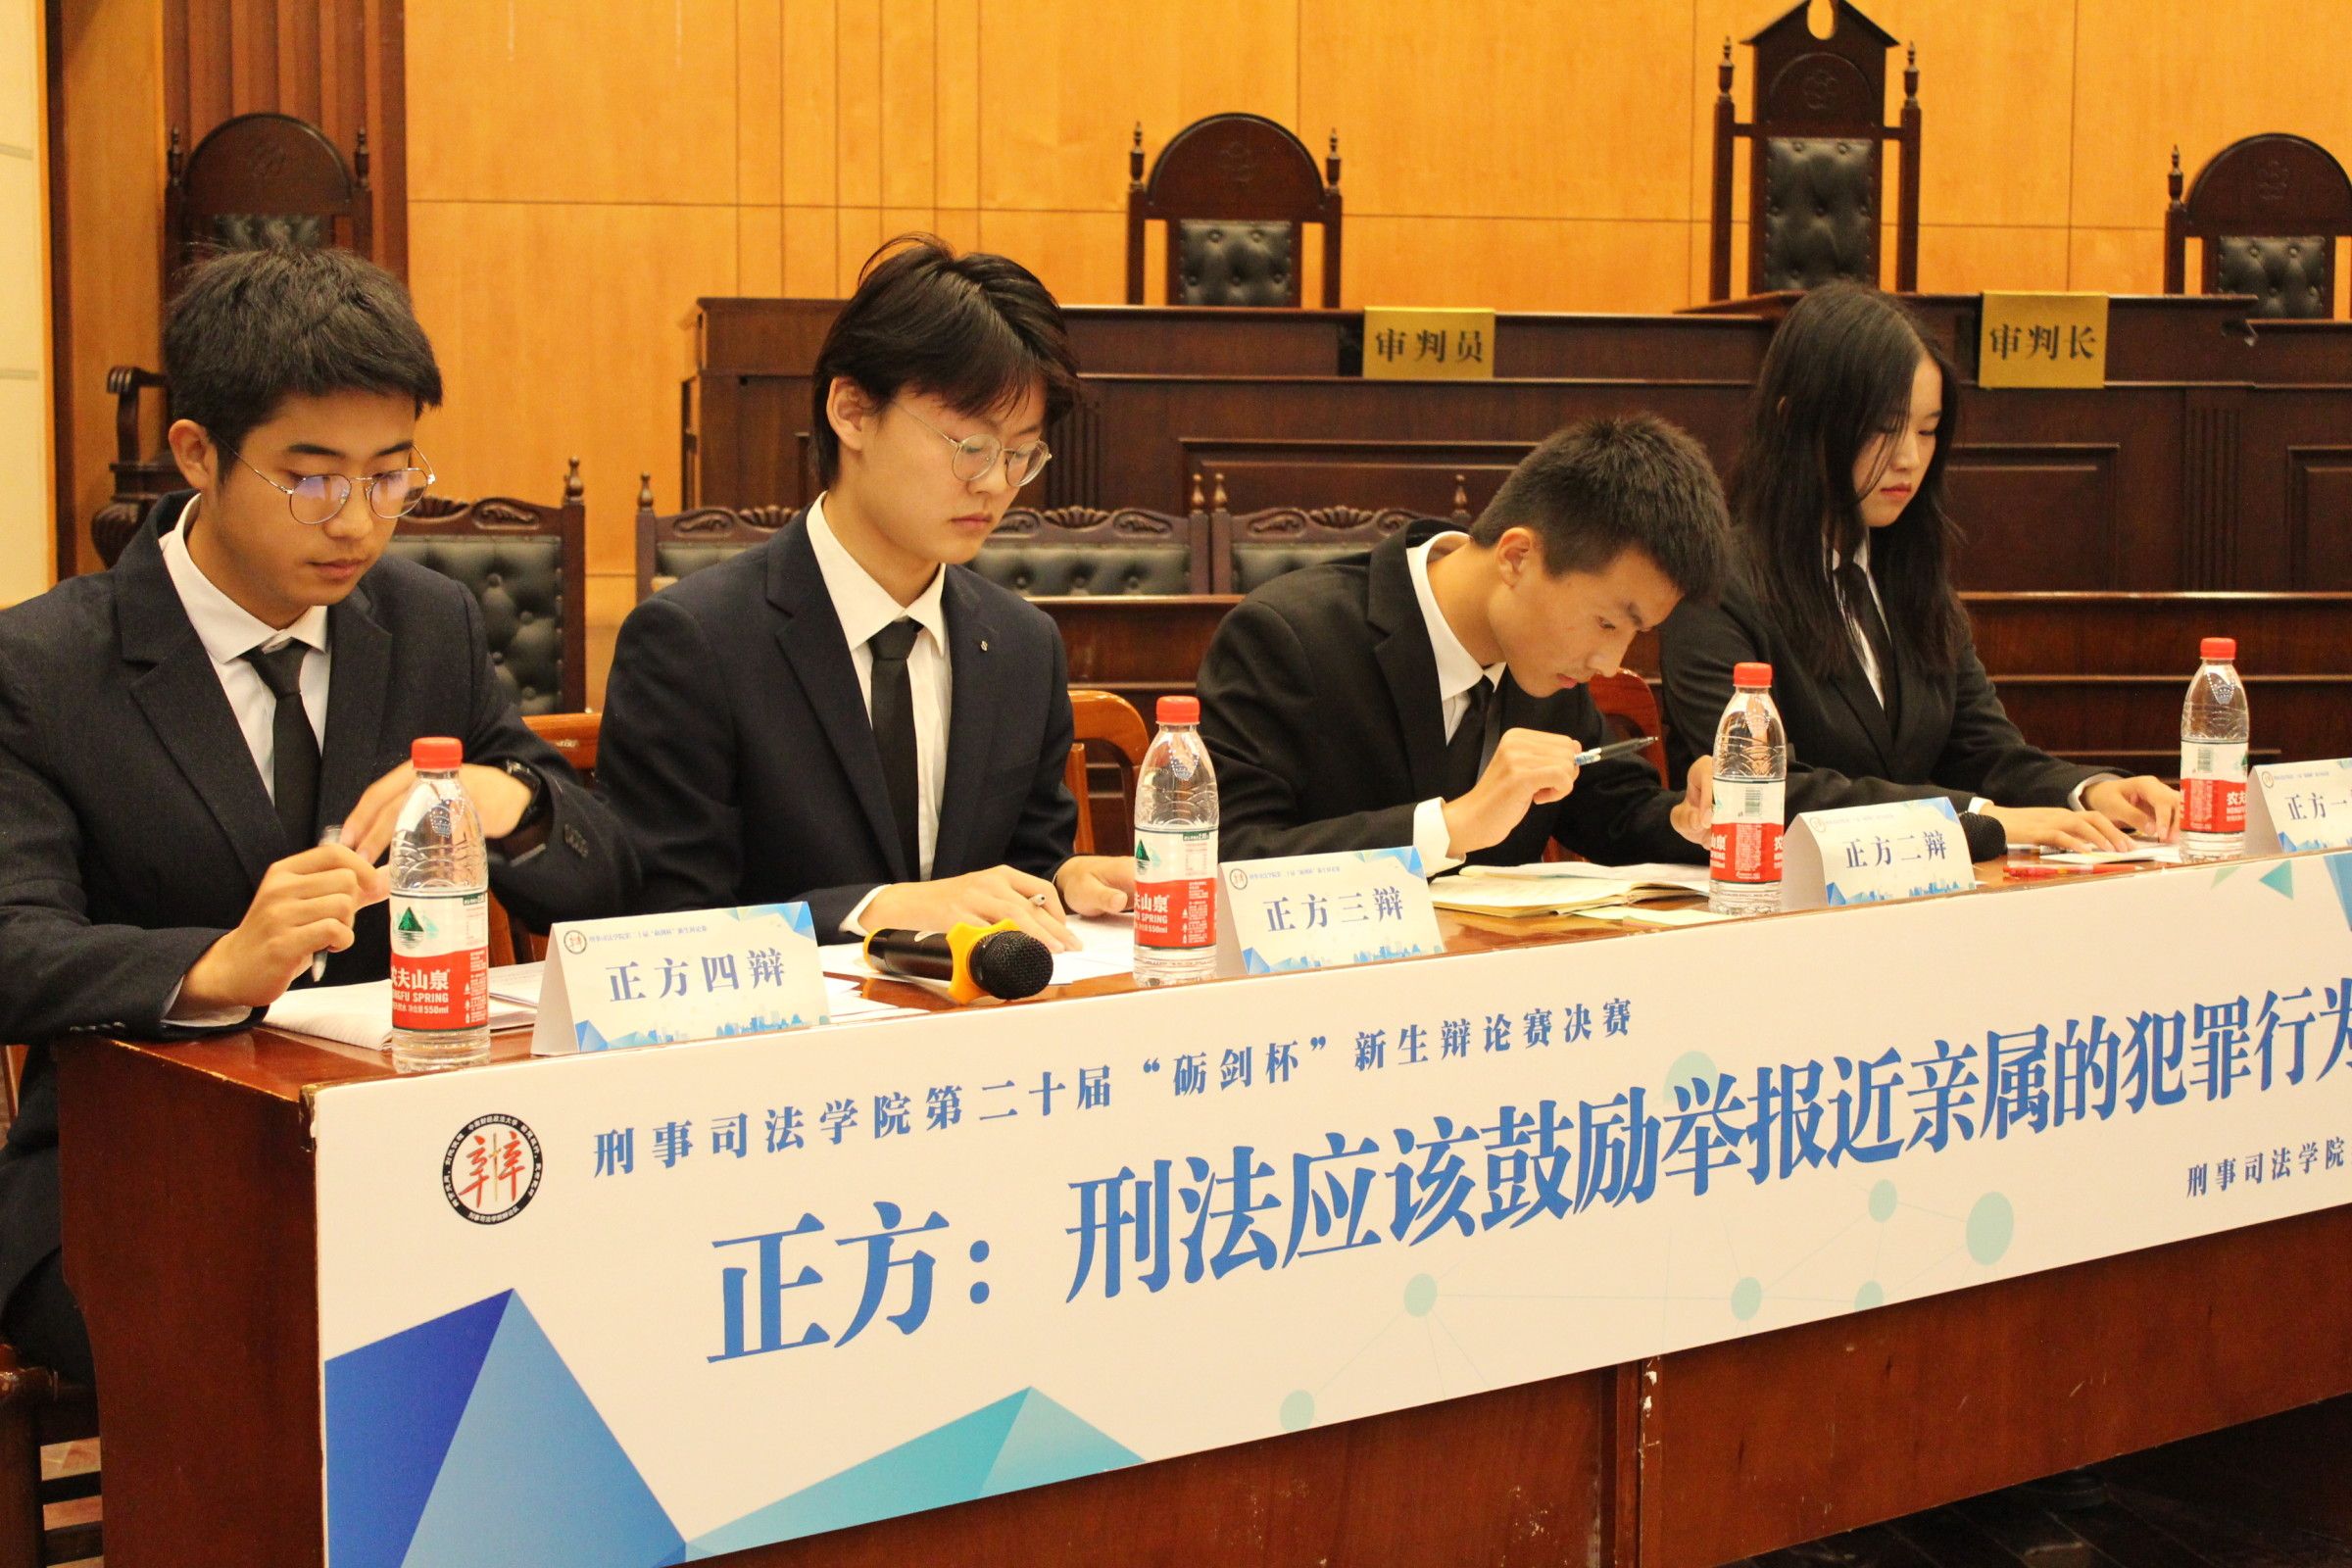 管理学院班级辩论赛表演赛顺利举行-湖南城市学院管理学院